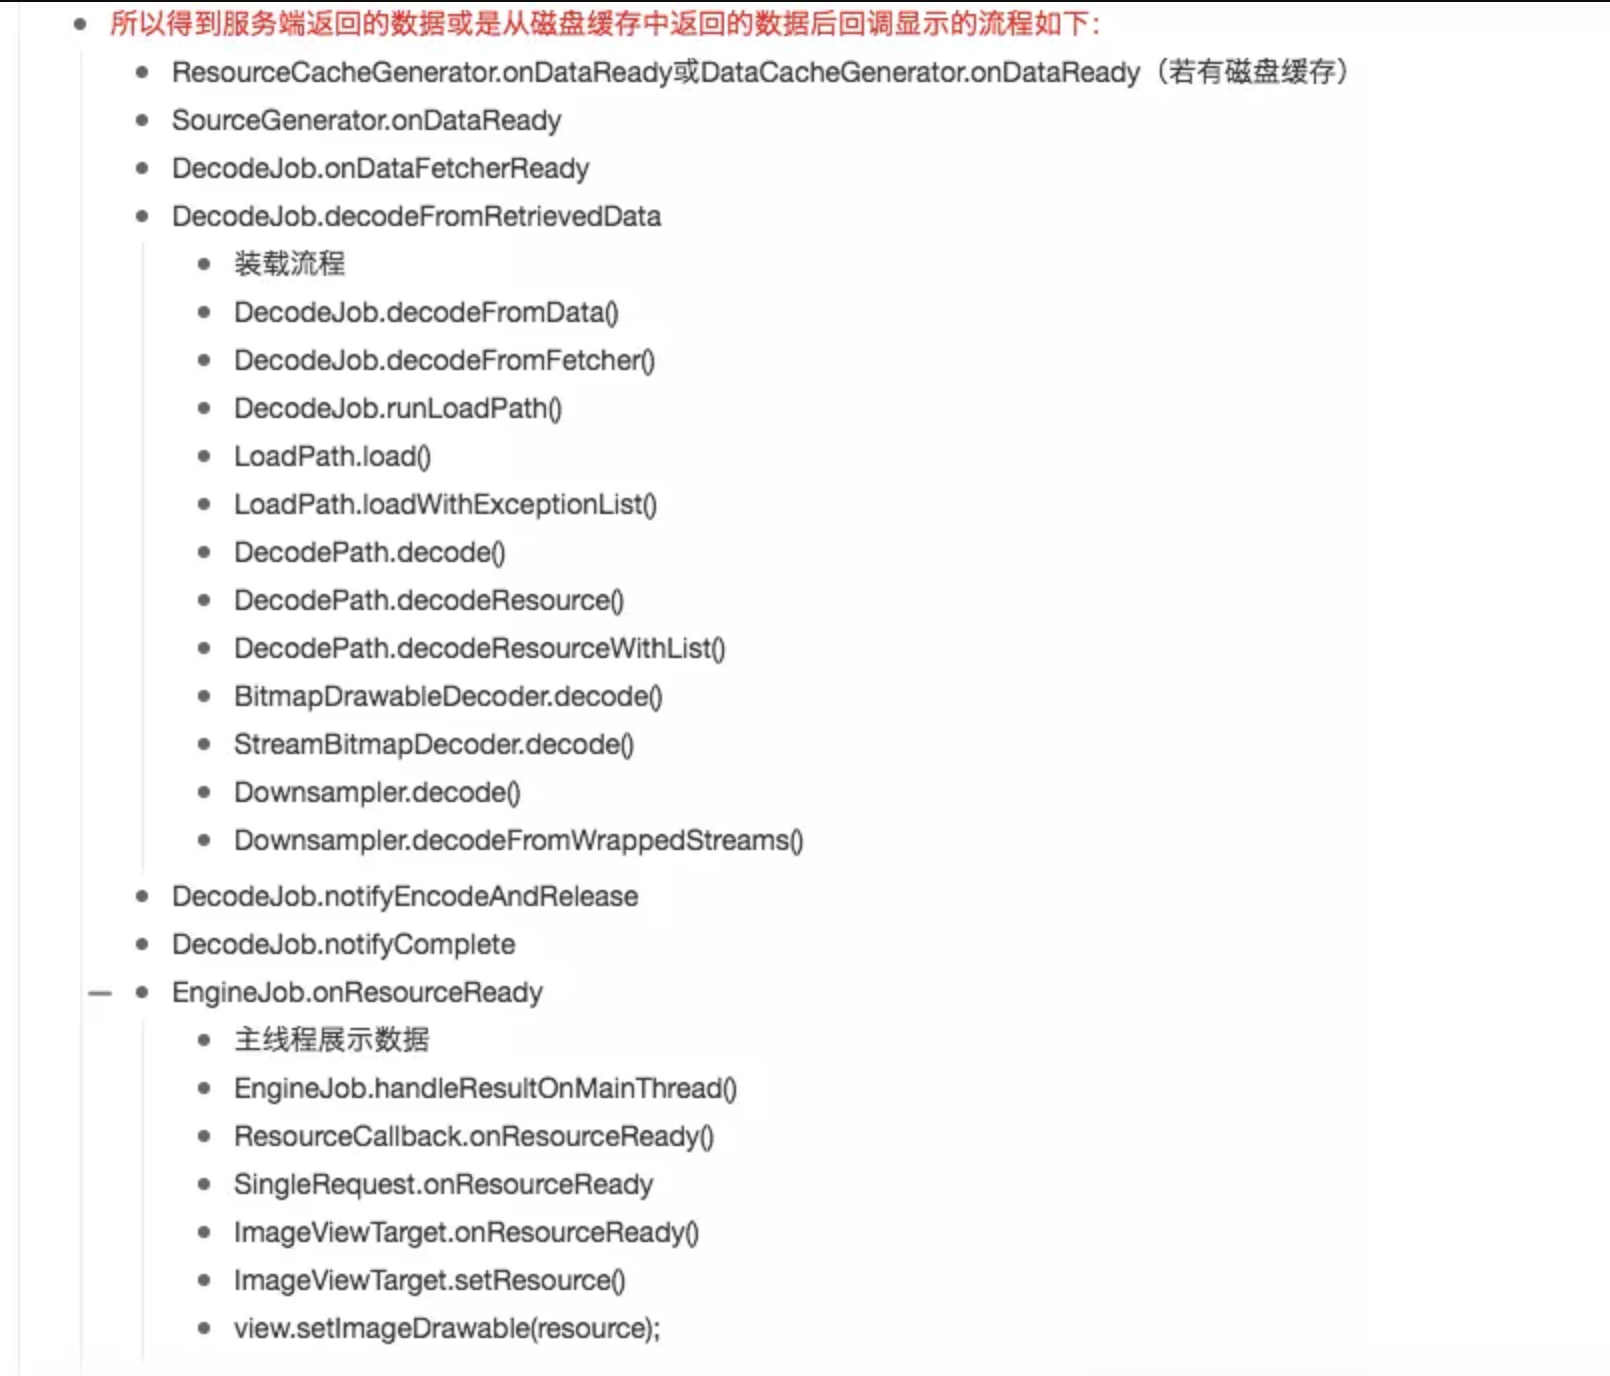 https://upload-images.jianshu.io/upload_images/7048342-30c15e0abcb702f8.png?imageMogr2/auto-orient/strip%7CimageView2/2/w/826/format/webp